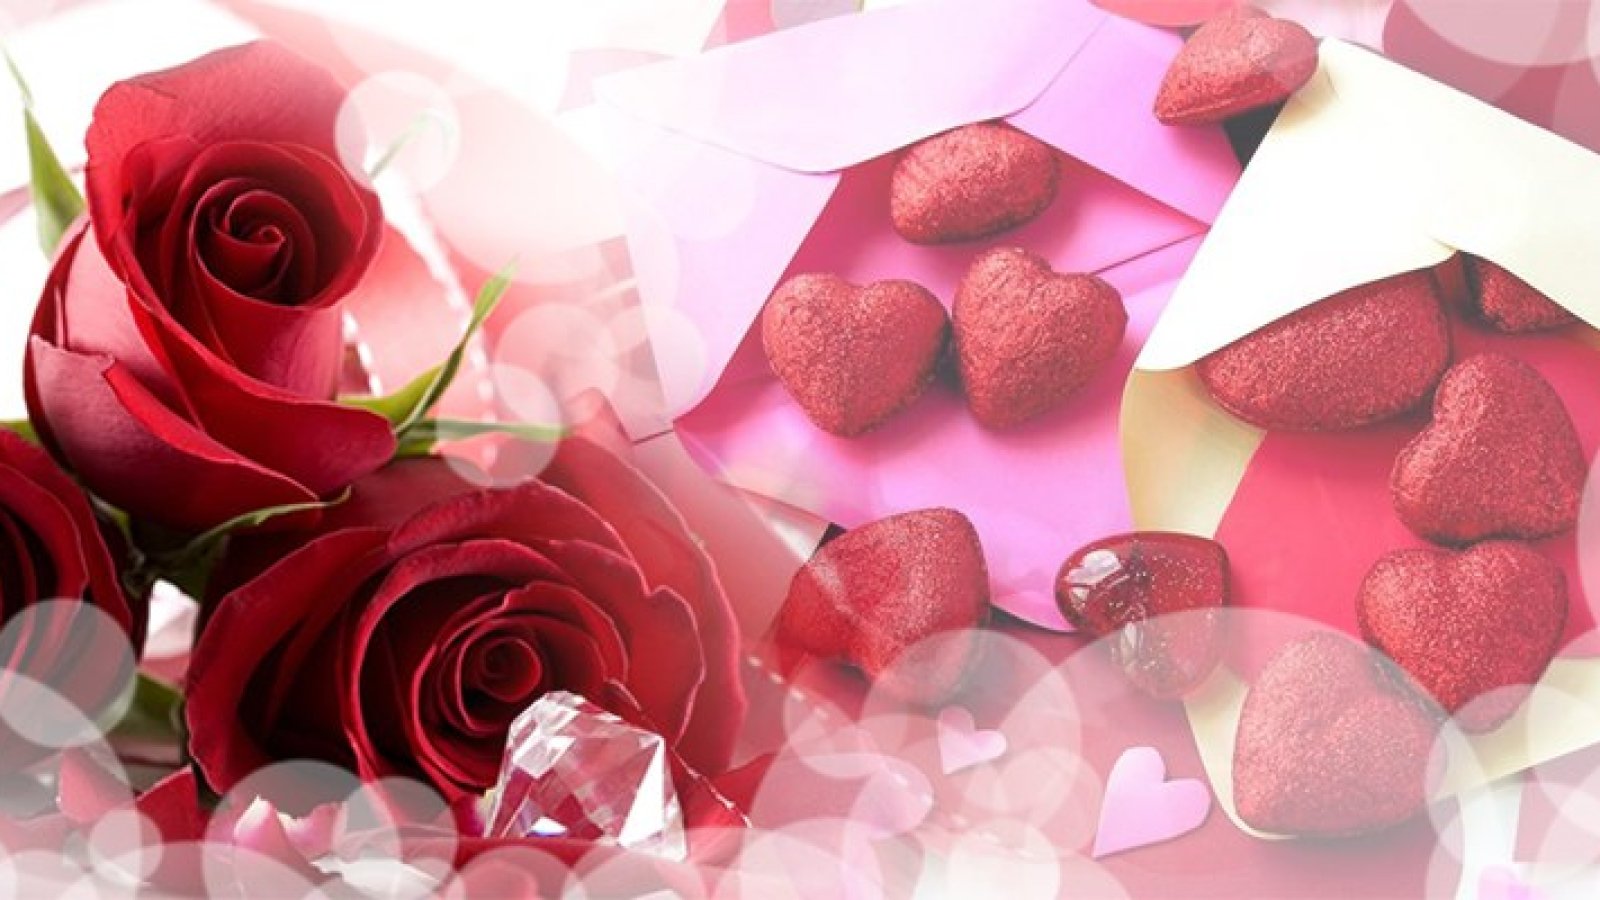 Сердце с цветами: подарок своими руками на День святого Валентина